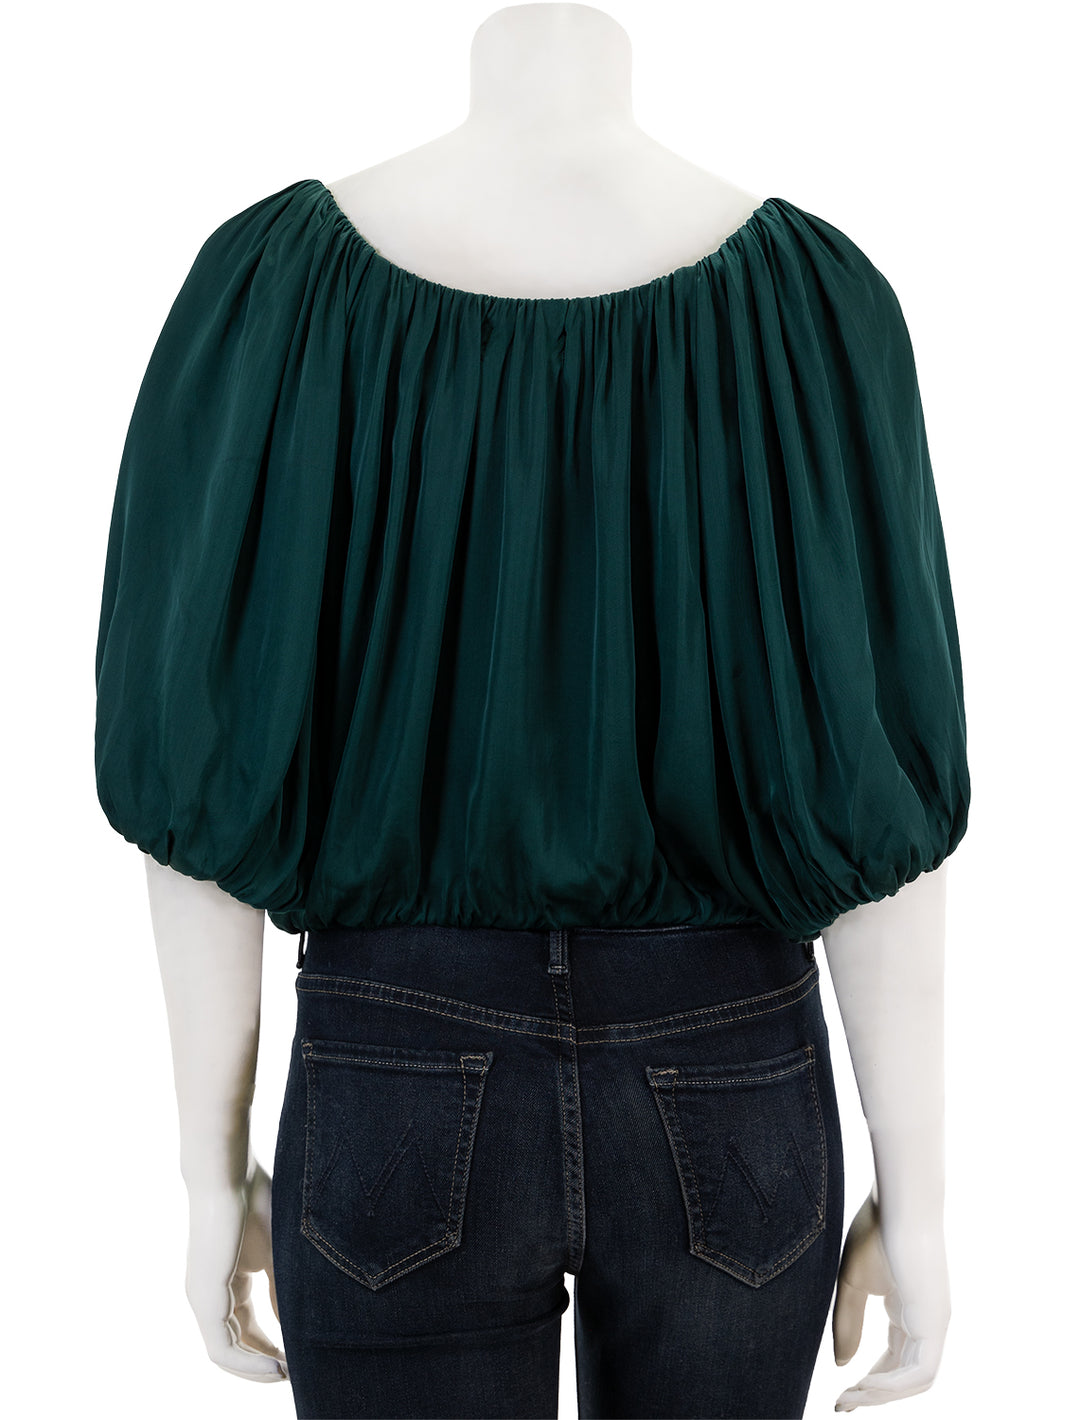 Back view of Velvet's tami blouse in fern.